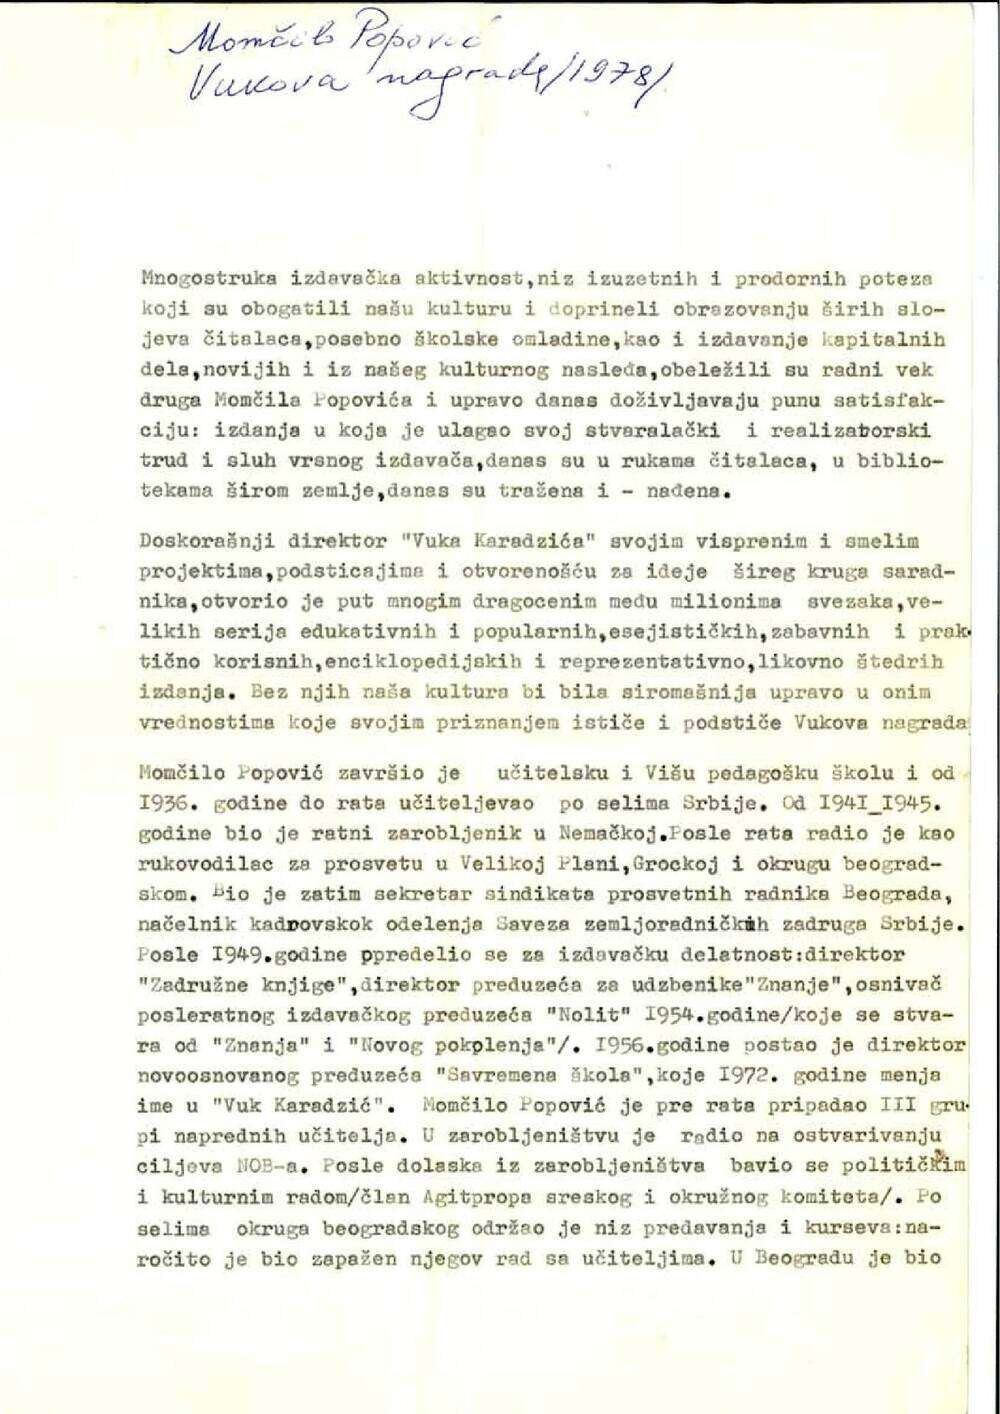 IRO Vuk Karadžić - Iz obrazloženja za Vukovu nagradu - Momčilo Popović - Kulturno prosvetna zajednica Srbije, 1978. godina